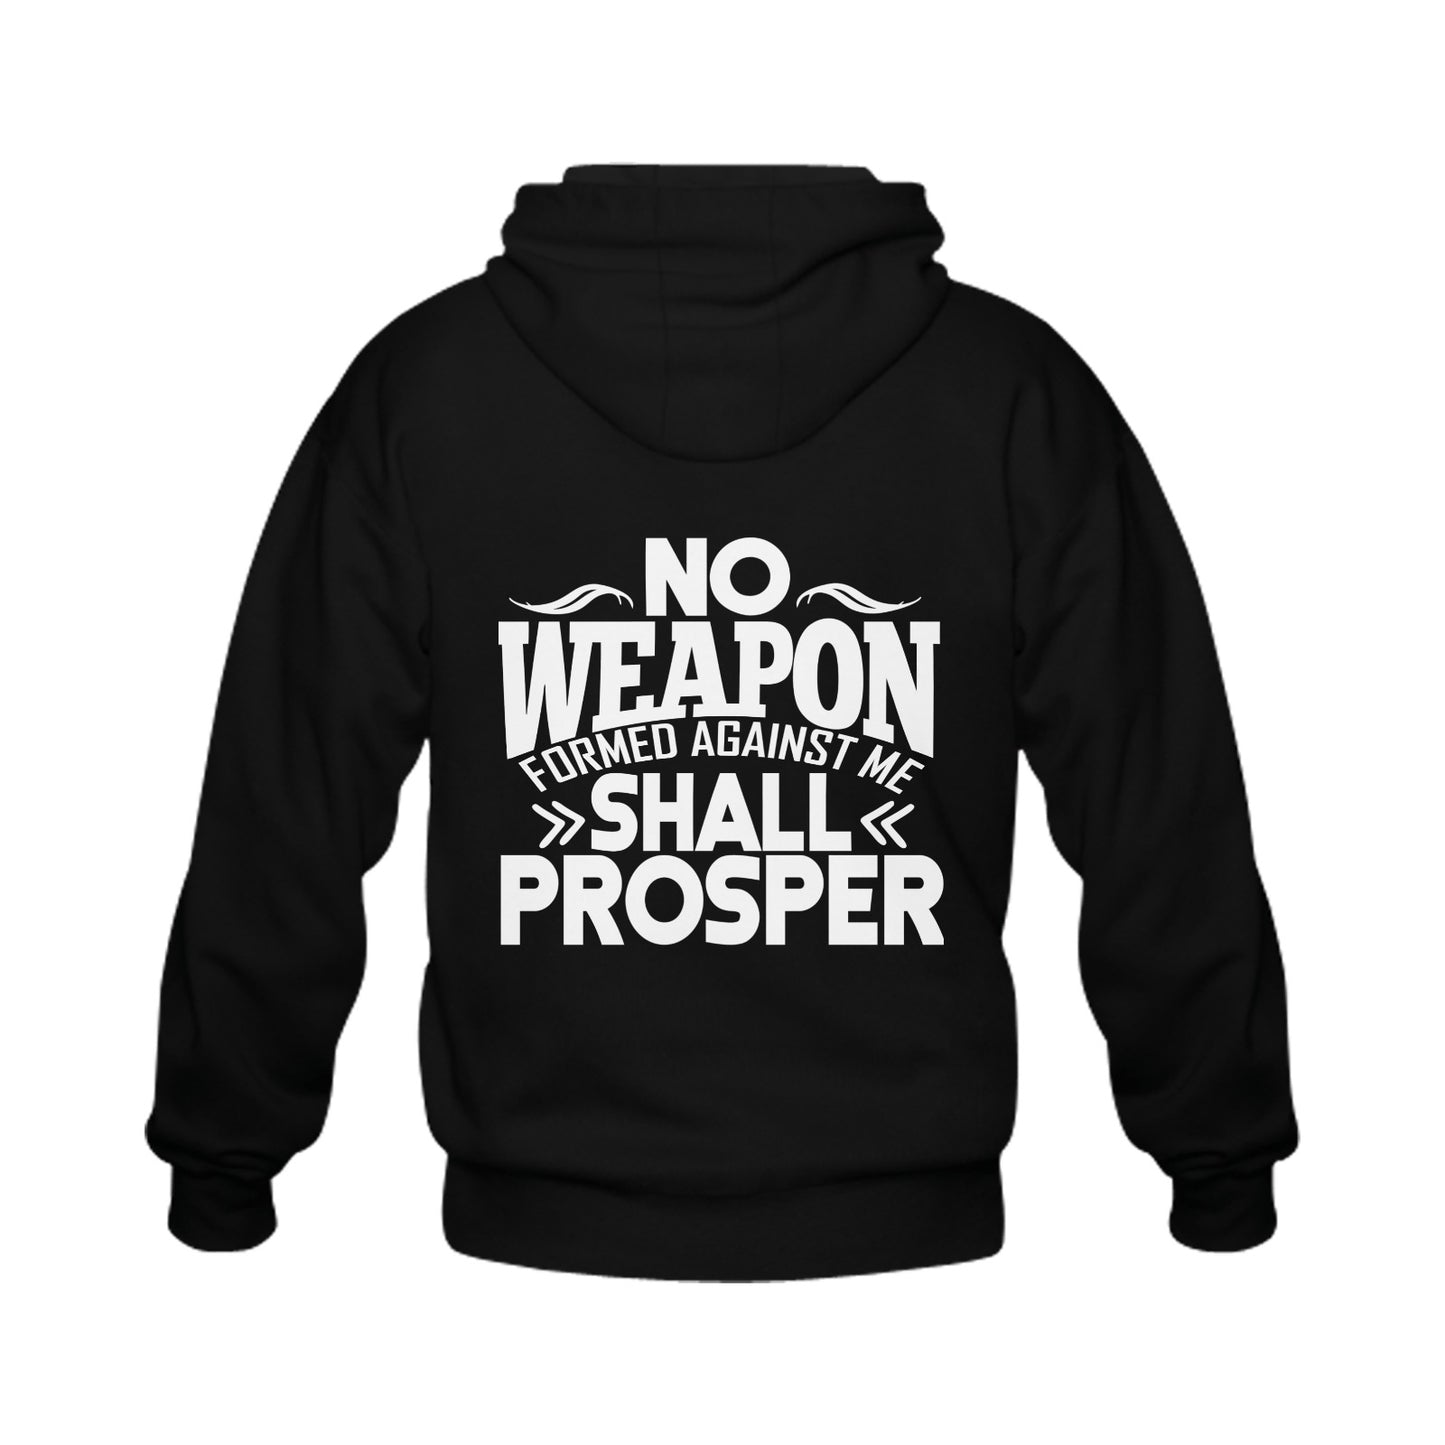 No Weapon Formed Against Me Shall Prosper hoodie Gildan Full Zip Hooded Sweatshirt